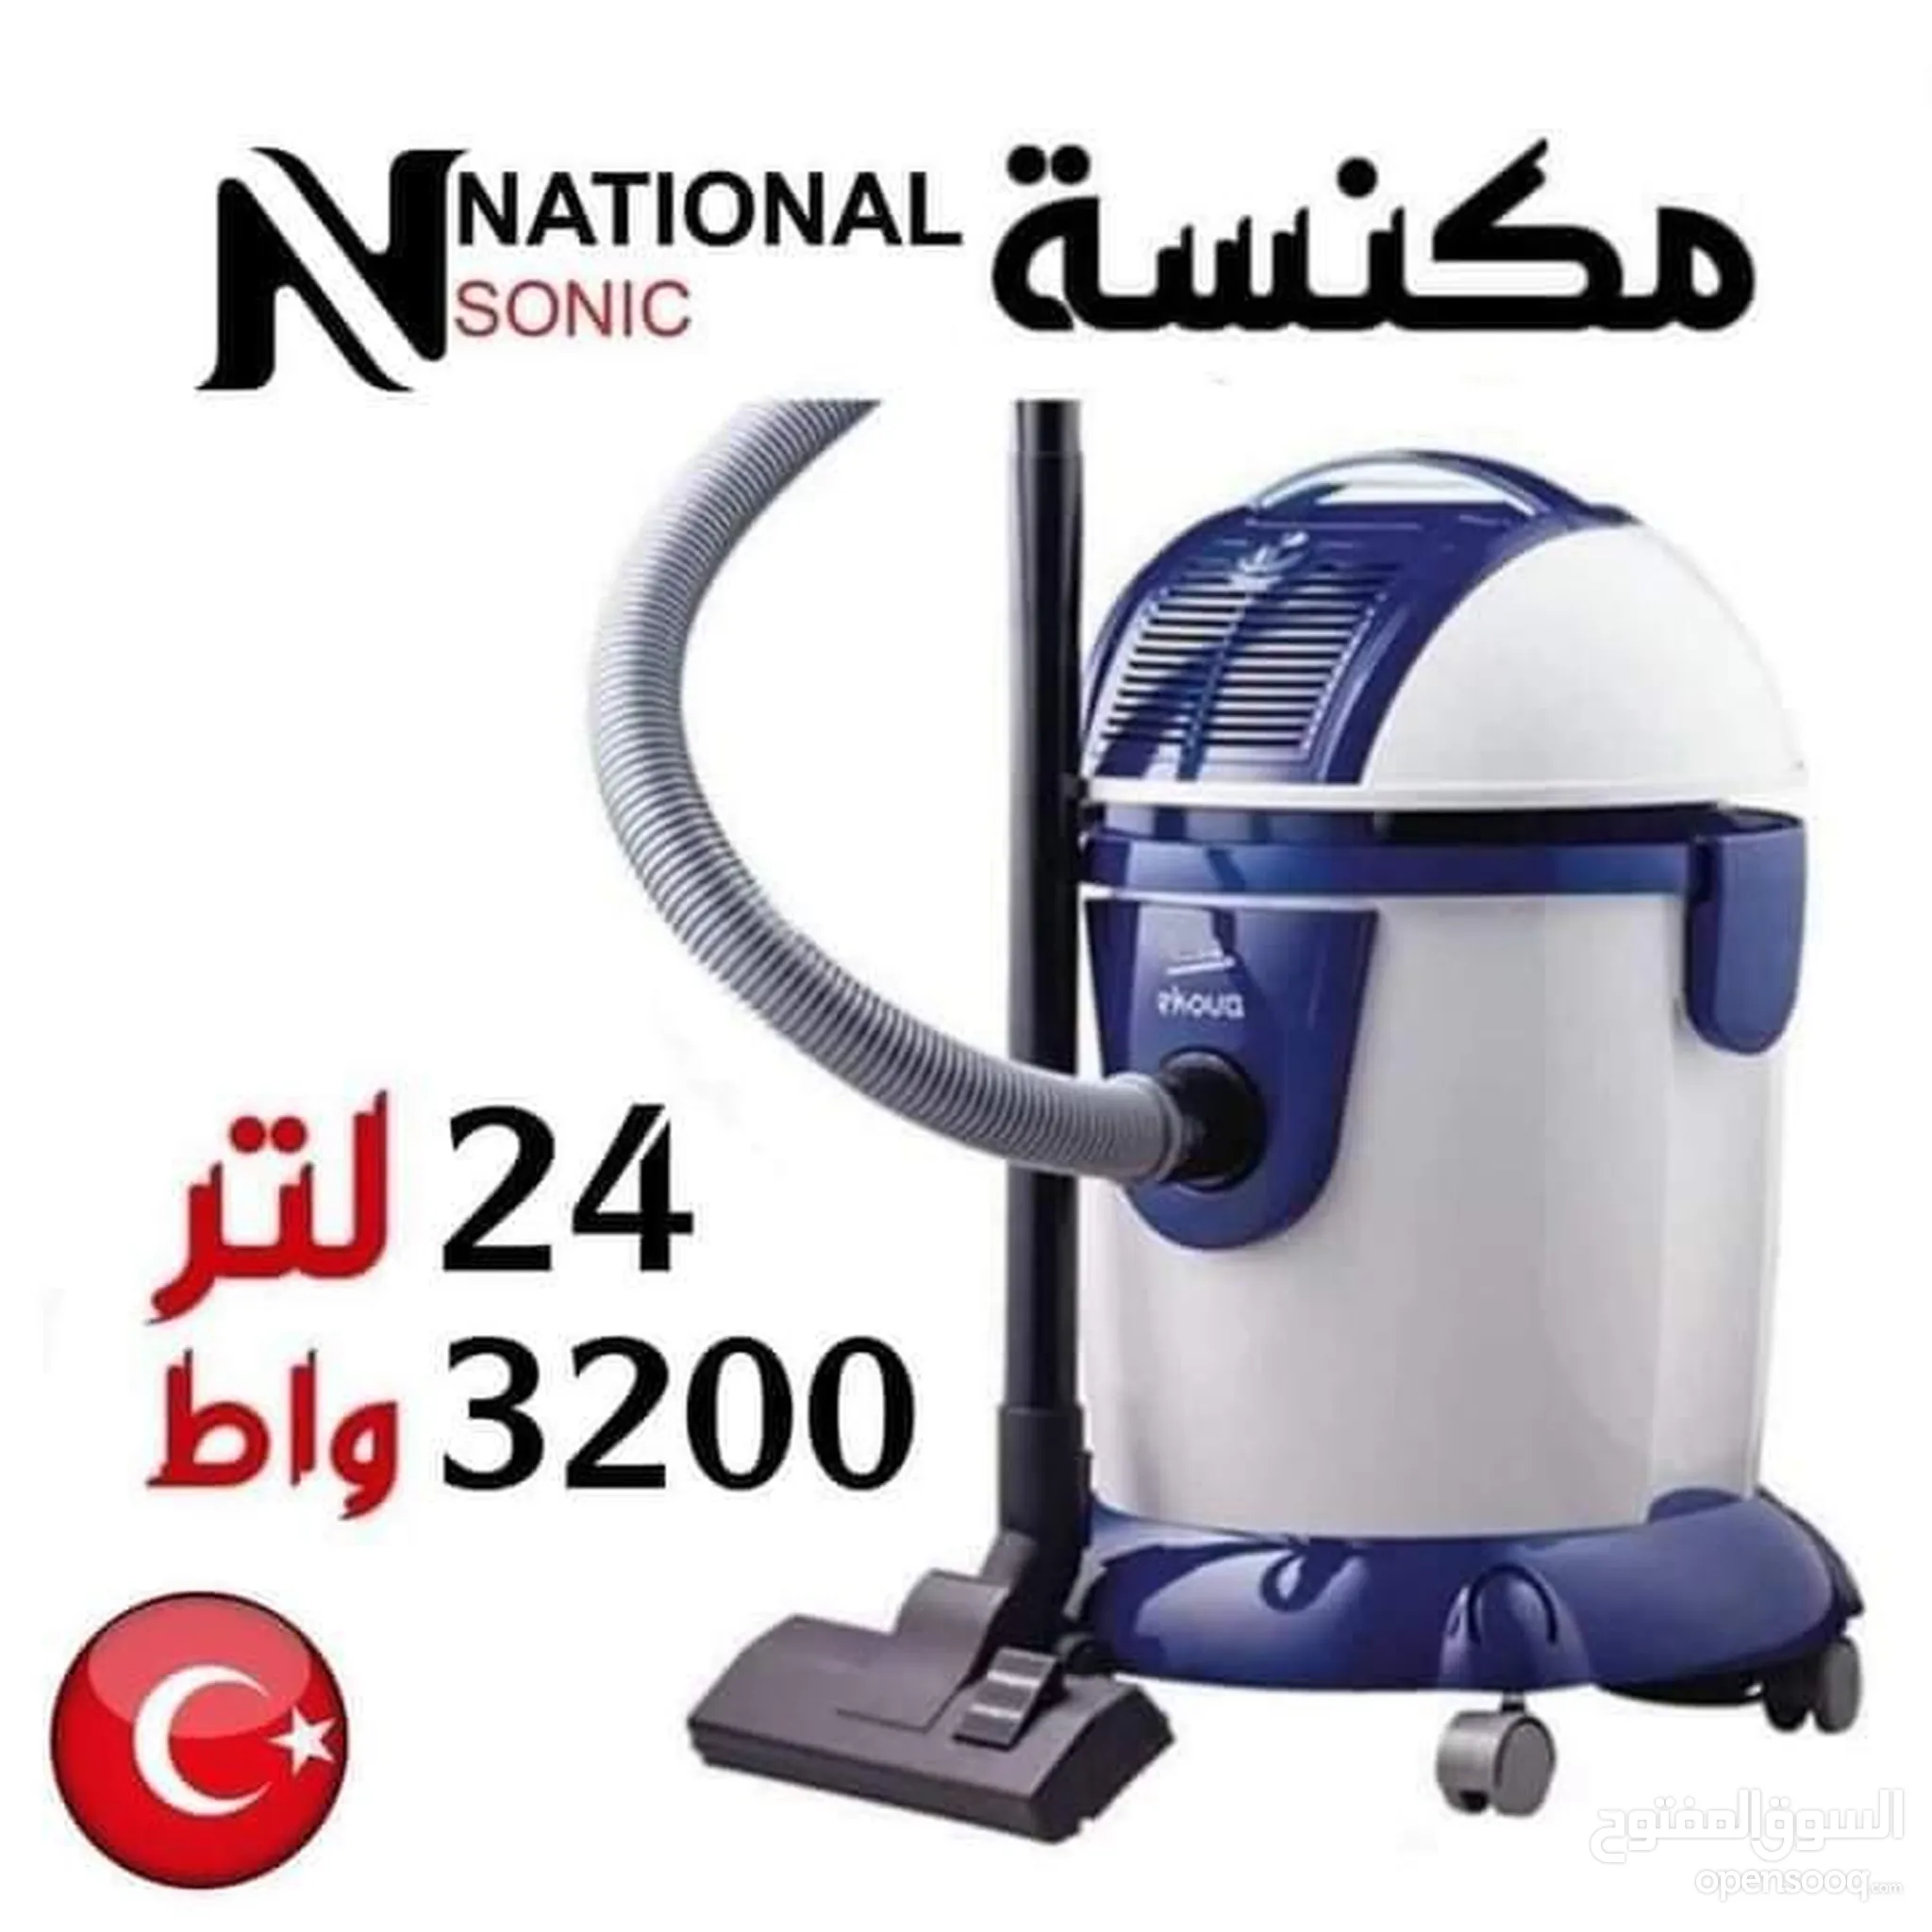 مكانس كهربائية ناشونال إليكتريك للبيع في الأردن - مكنسة كهربائية صغيرة,  لاسلكية : أفضل سعر | السوق المفتوح